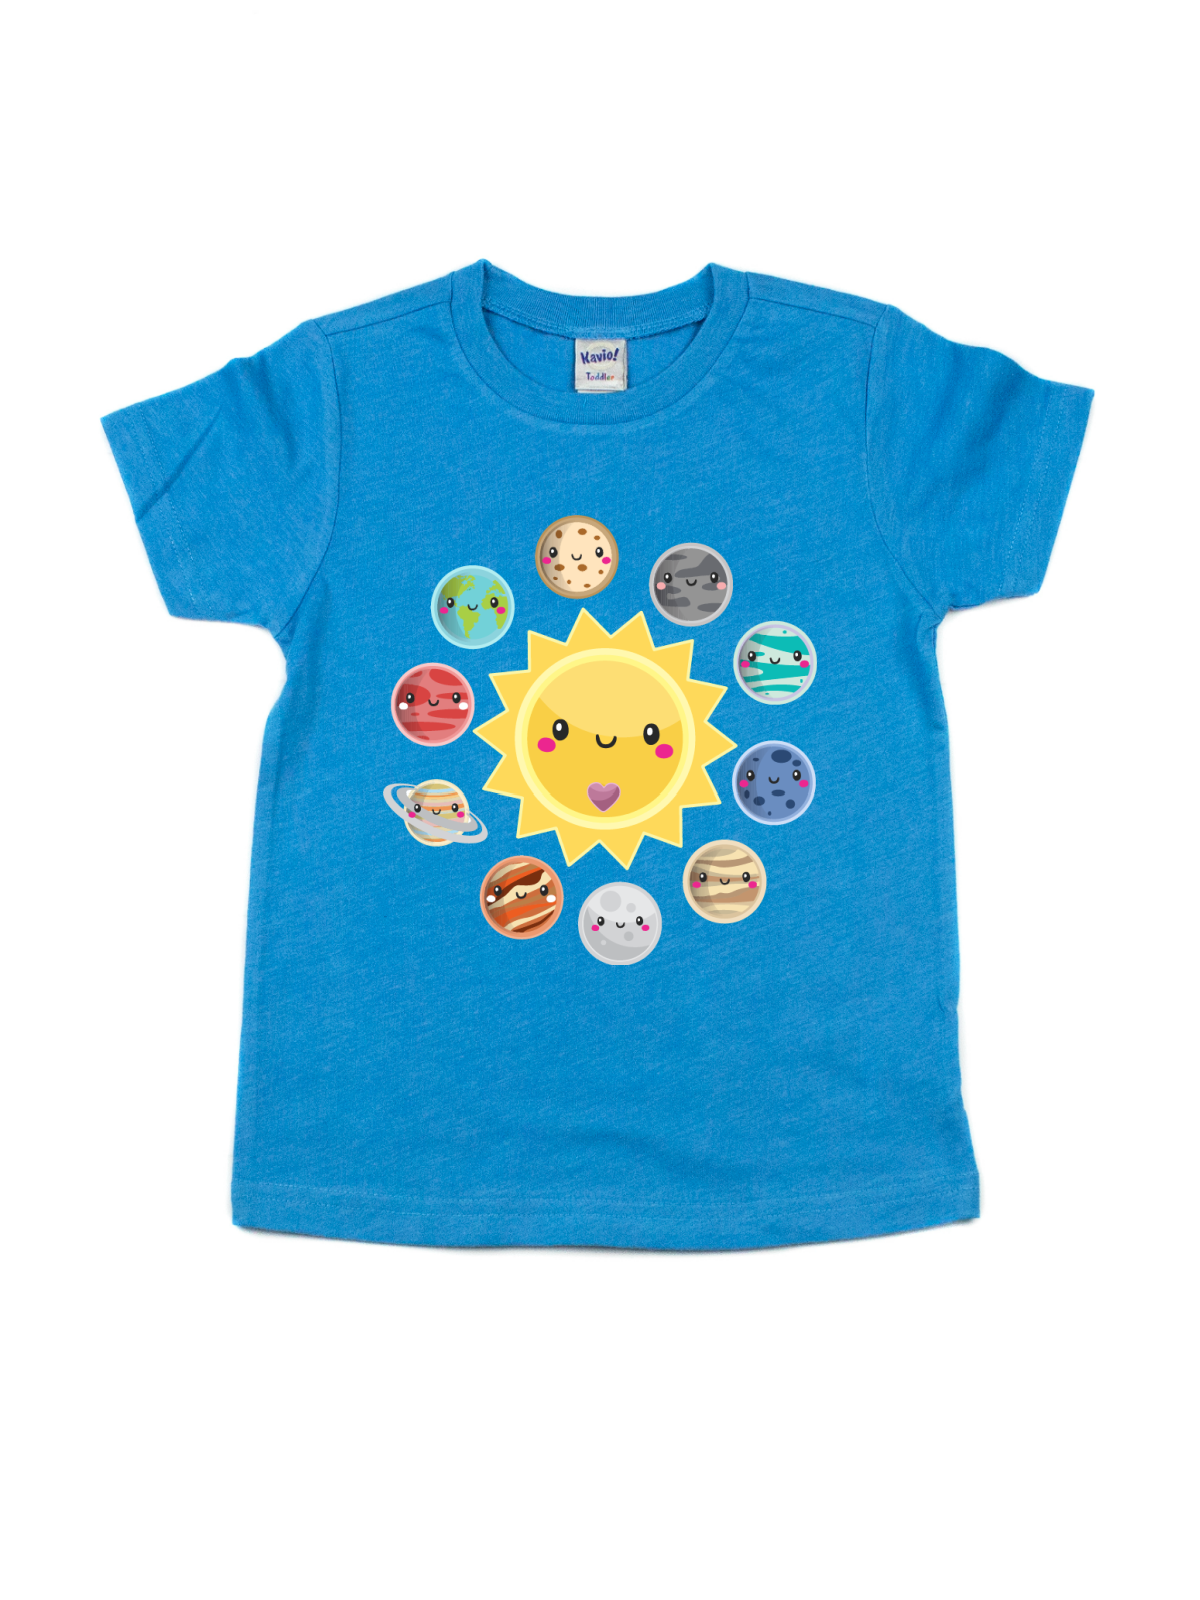 kids solar system shirt 